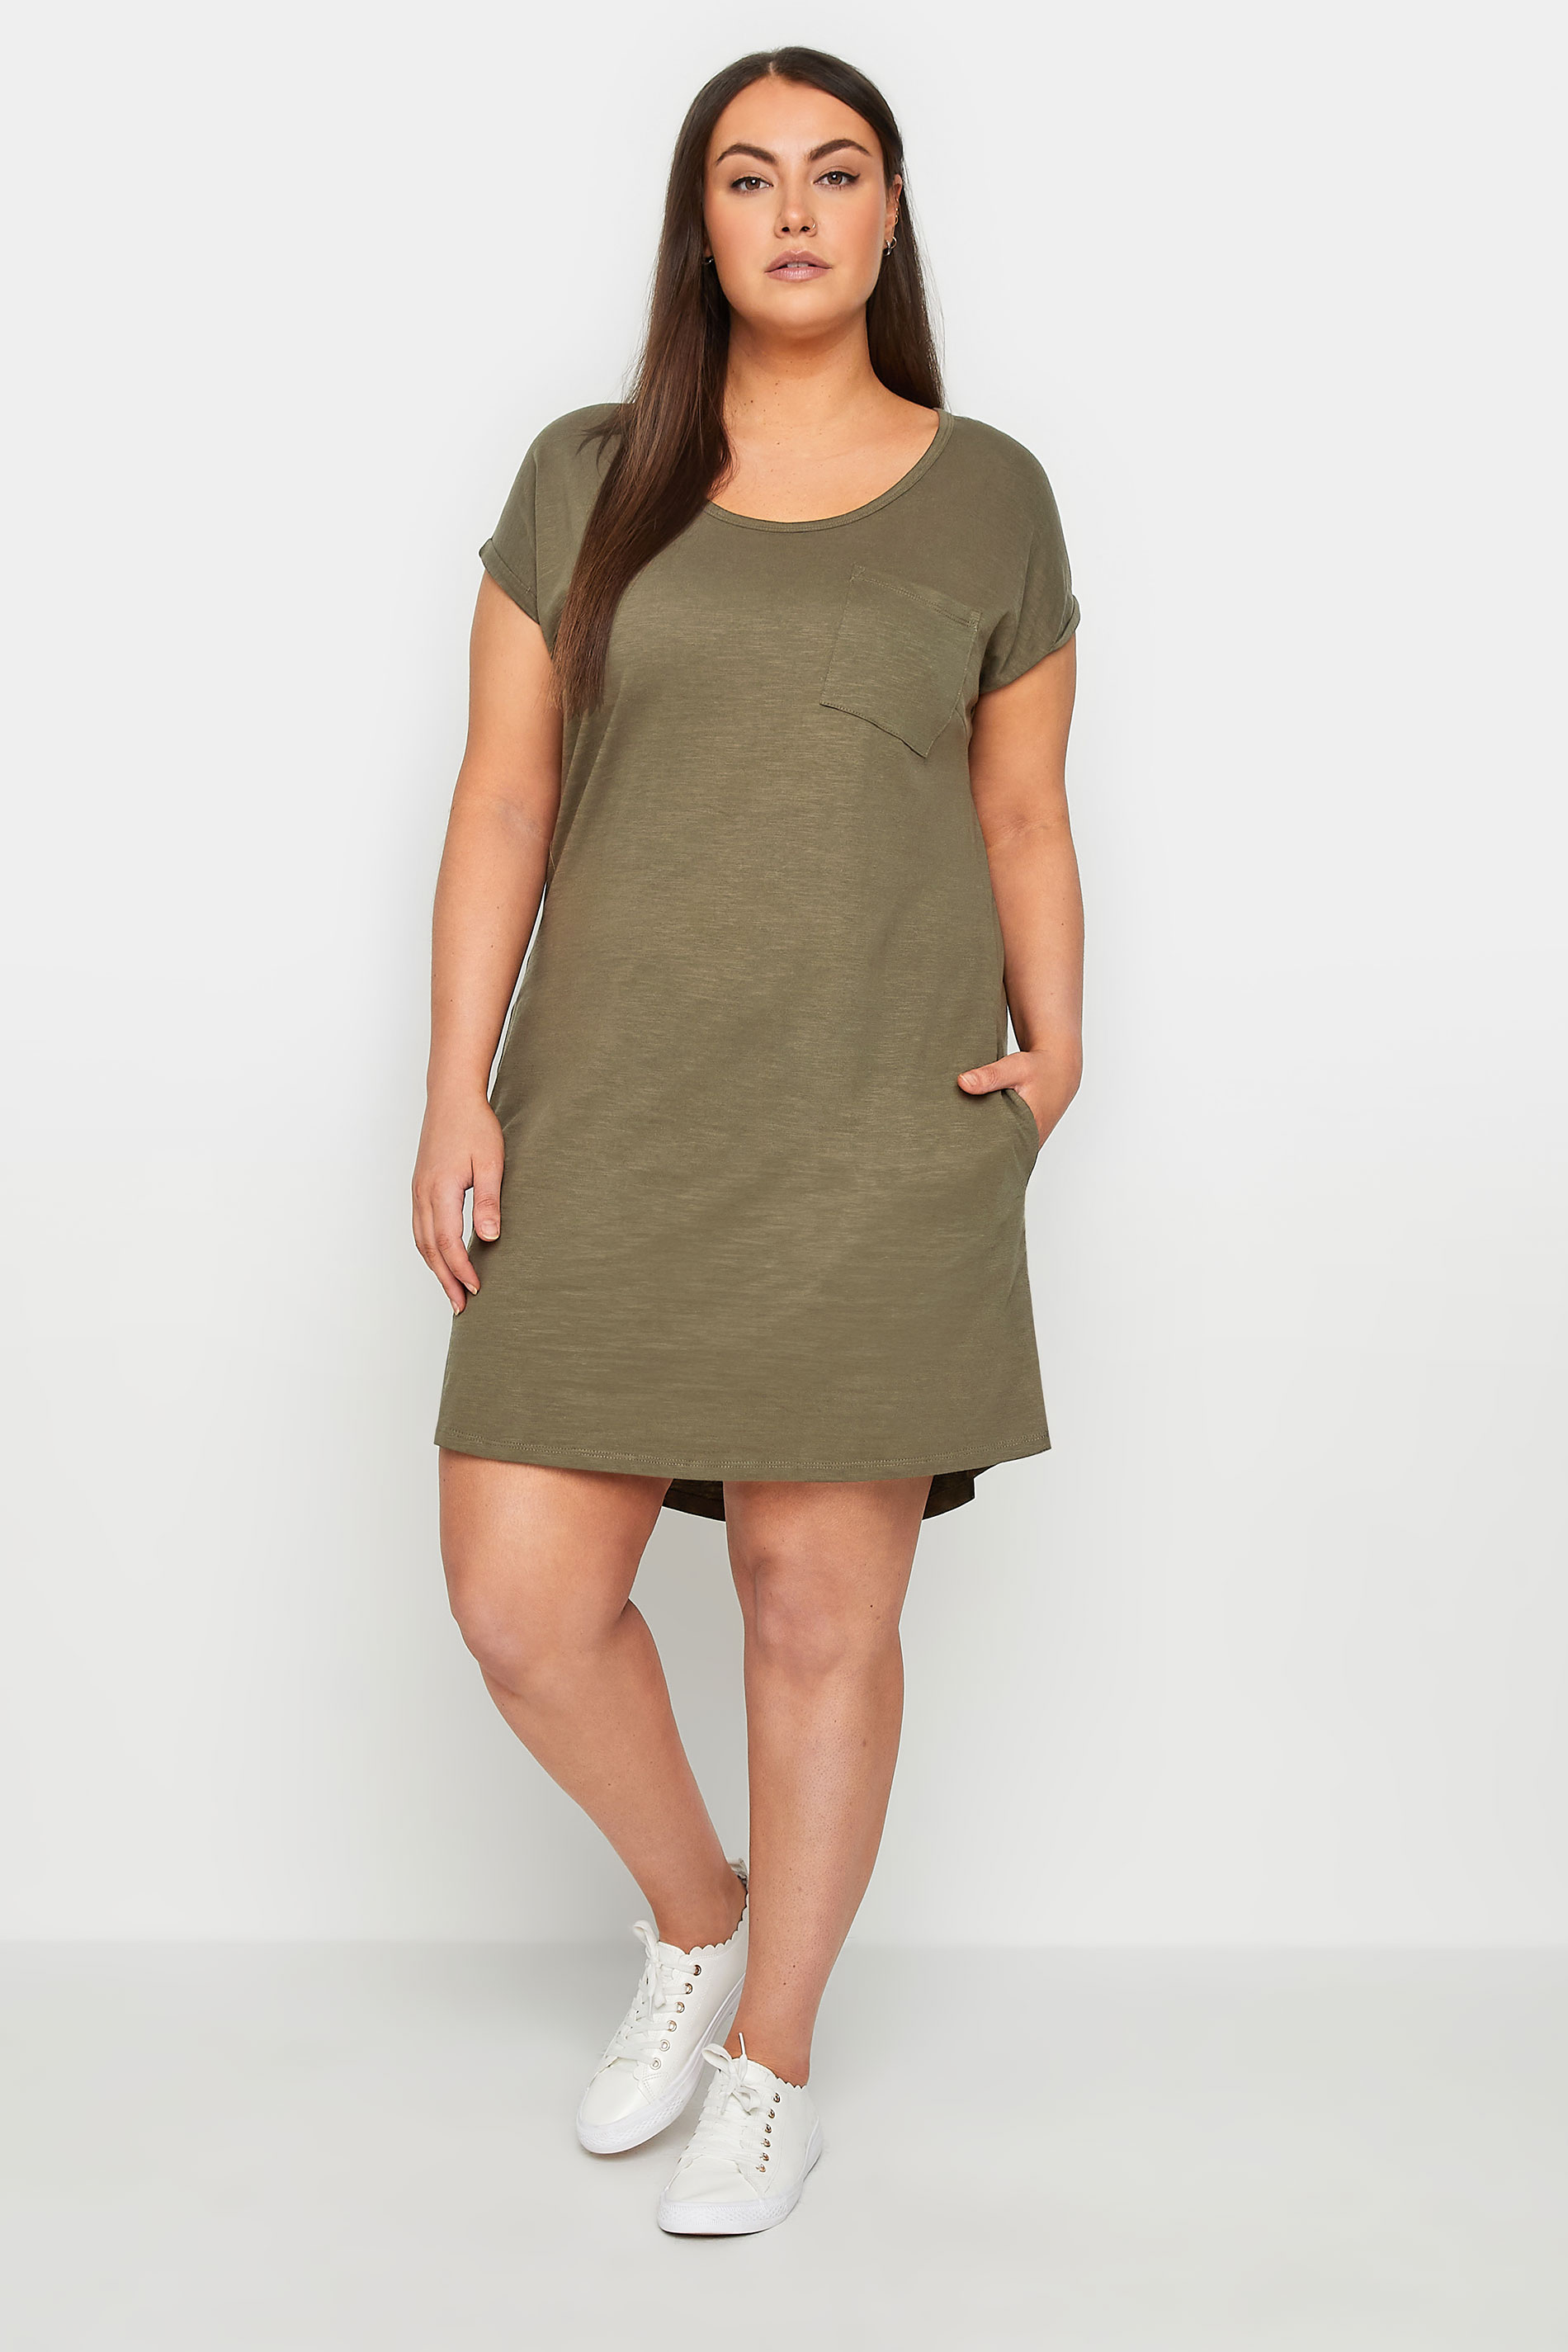 Evans Natural Olive Green Pocket Detail T-Shirt Dress 1